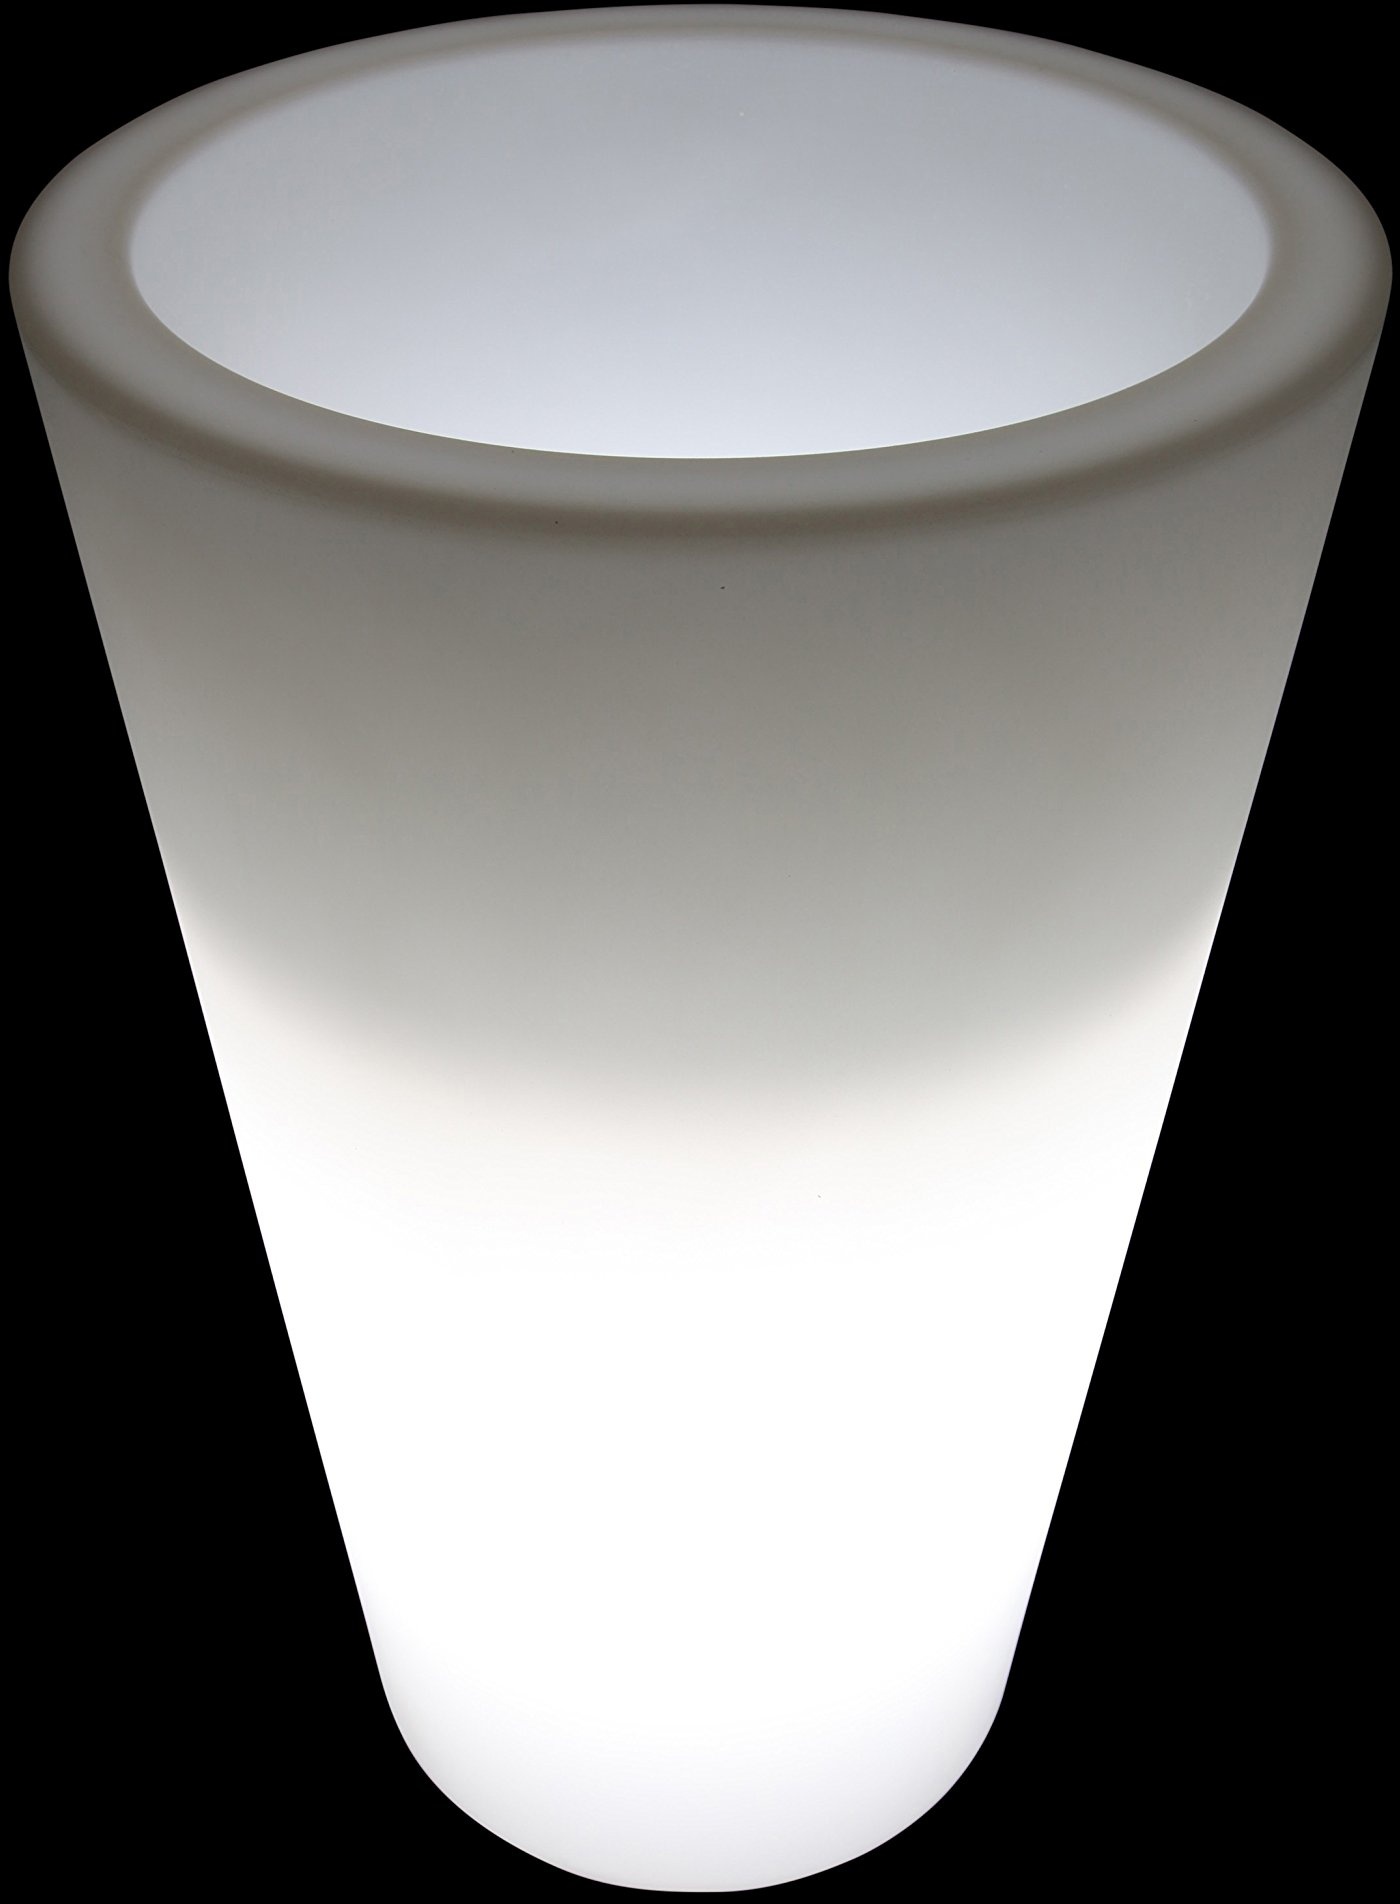 LED Blumenkübel Getränkekühler Zylinder Kunststoff Kübel weiß beleuchtet 40x38cm 